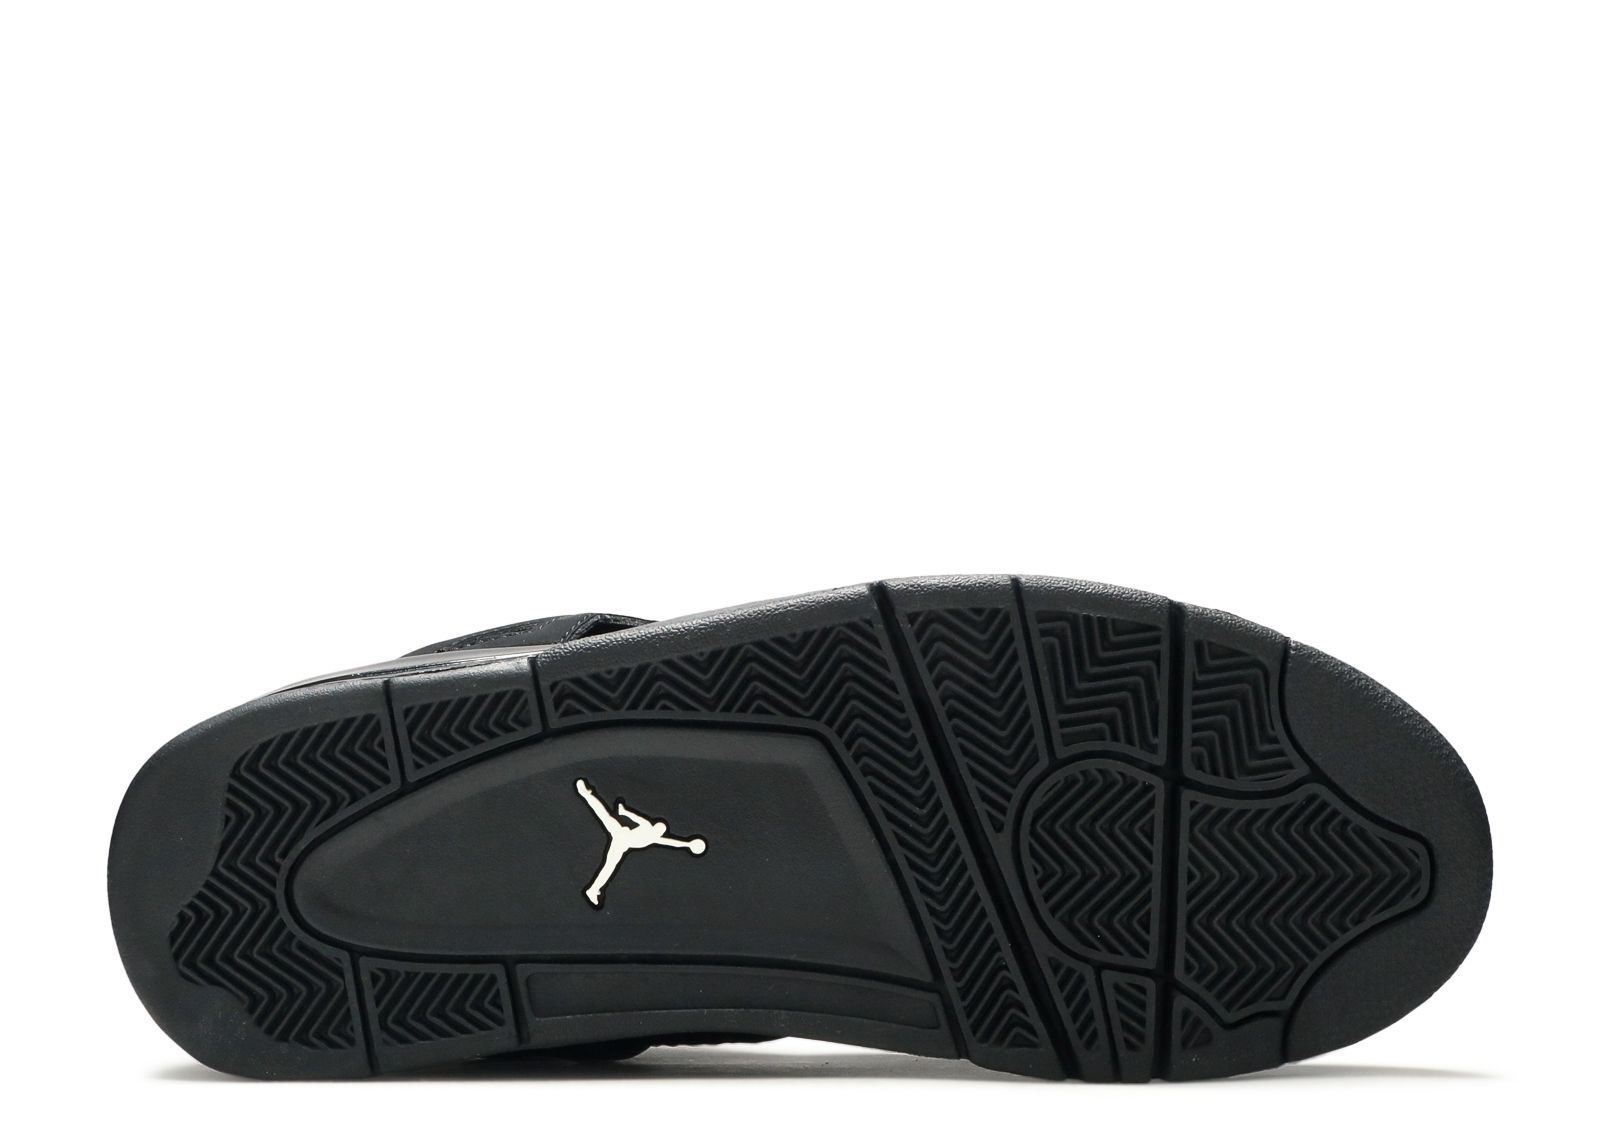 Air Jordan 4 Retro 'Black Cat' 2006 